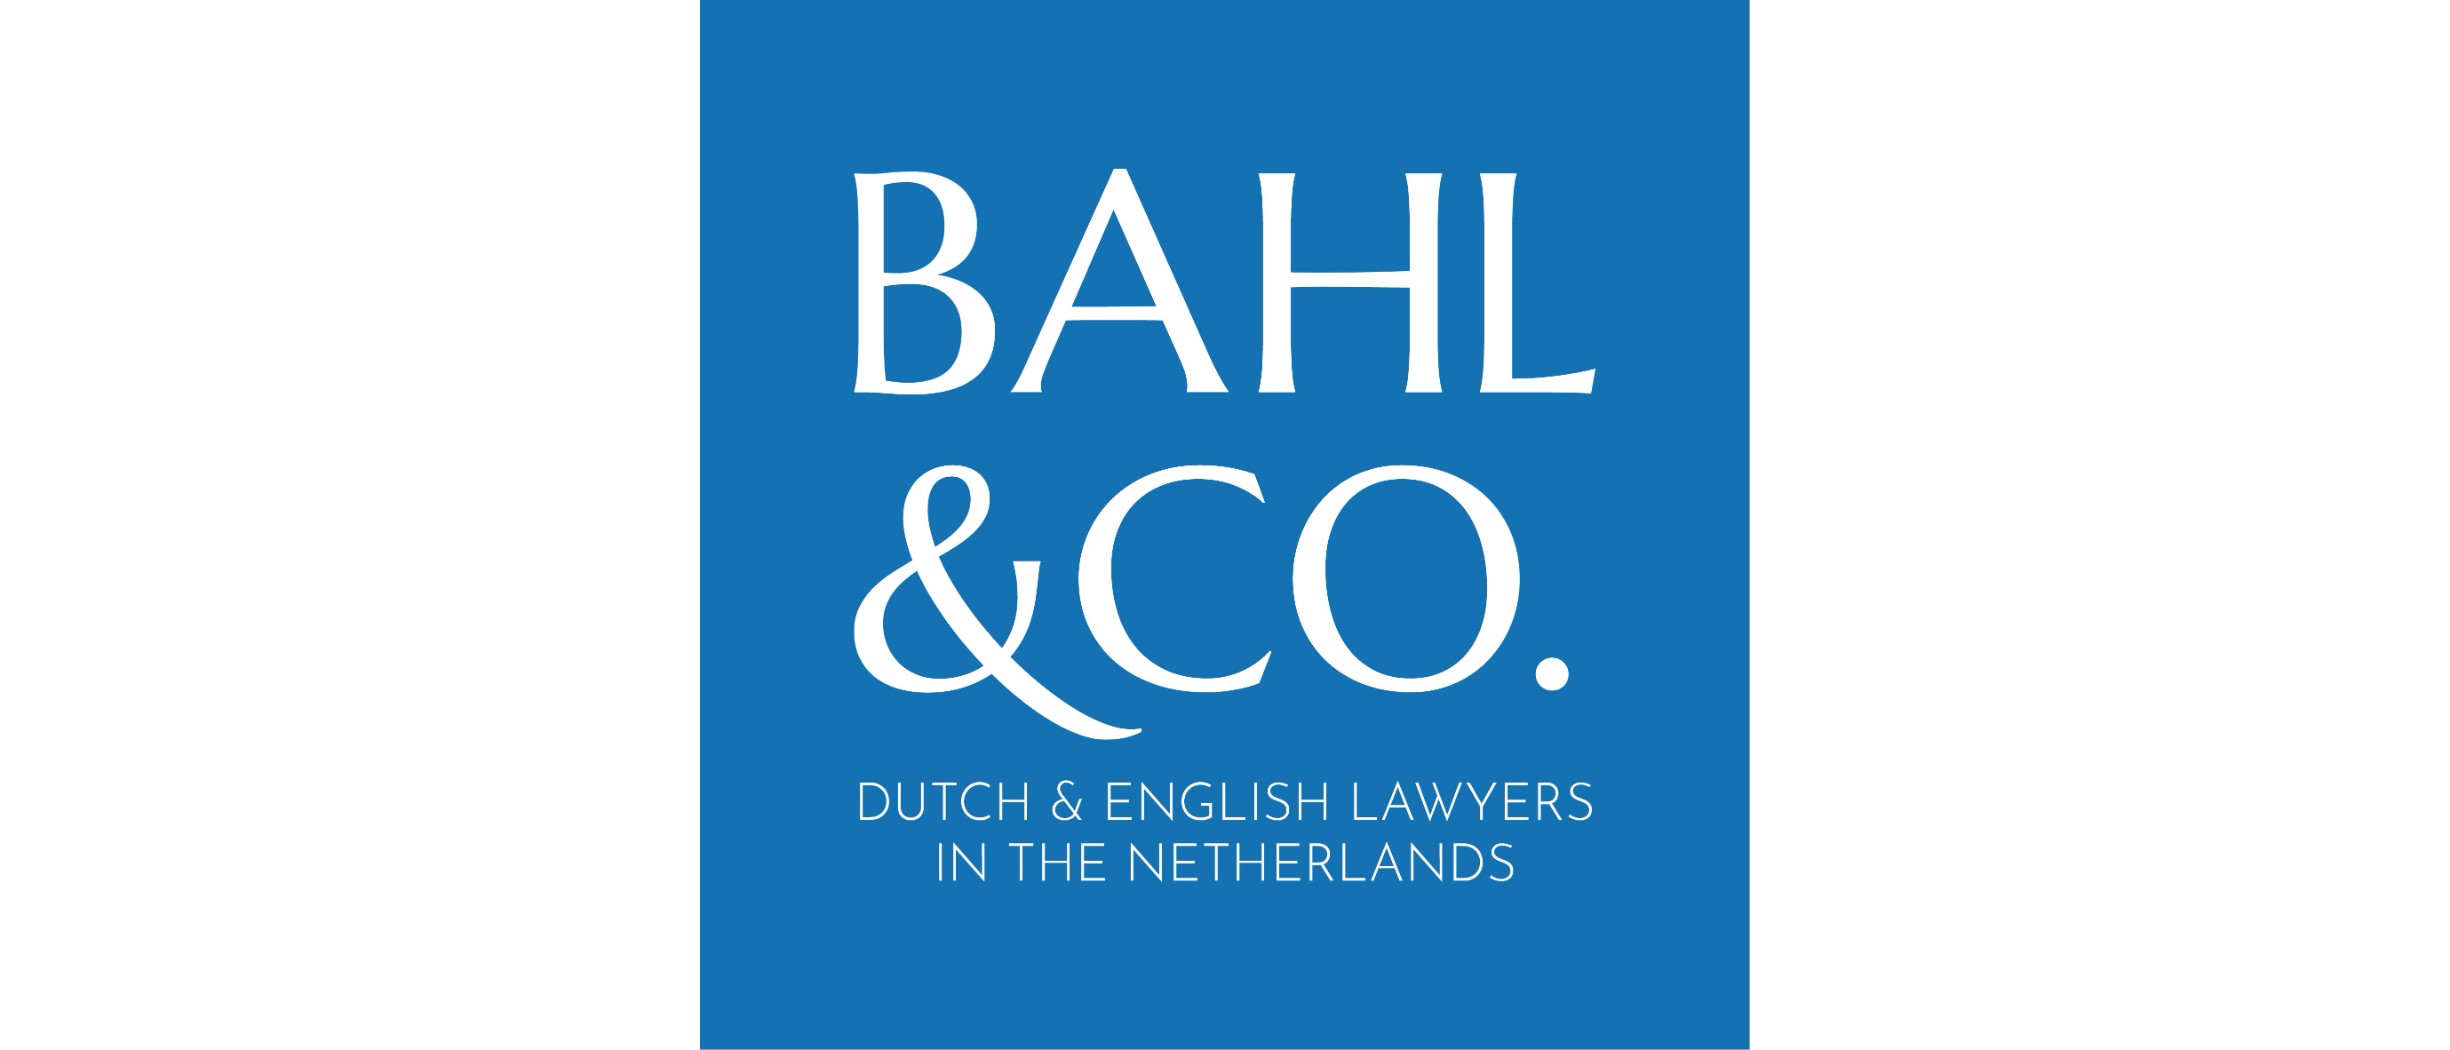 Bahl & Co.